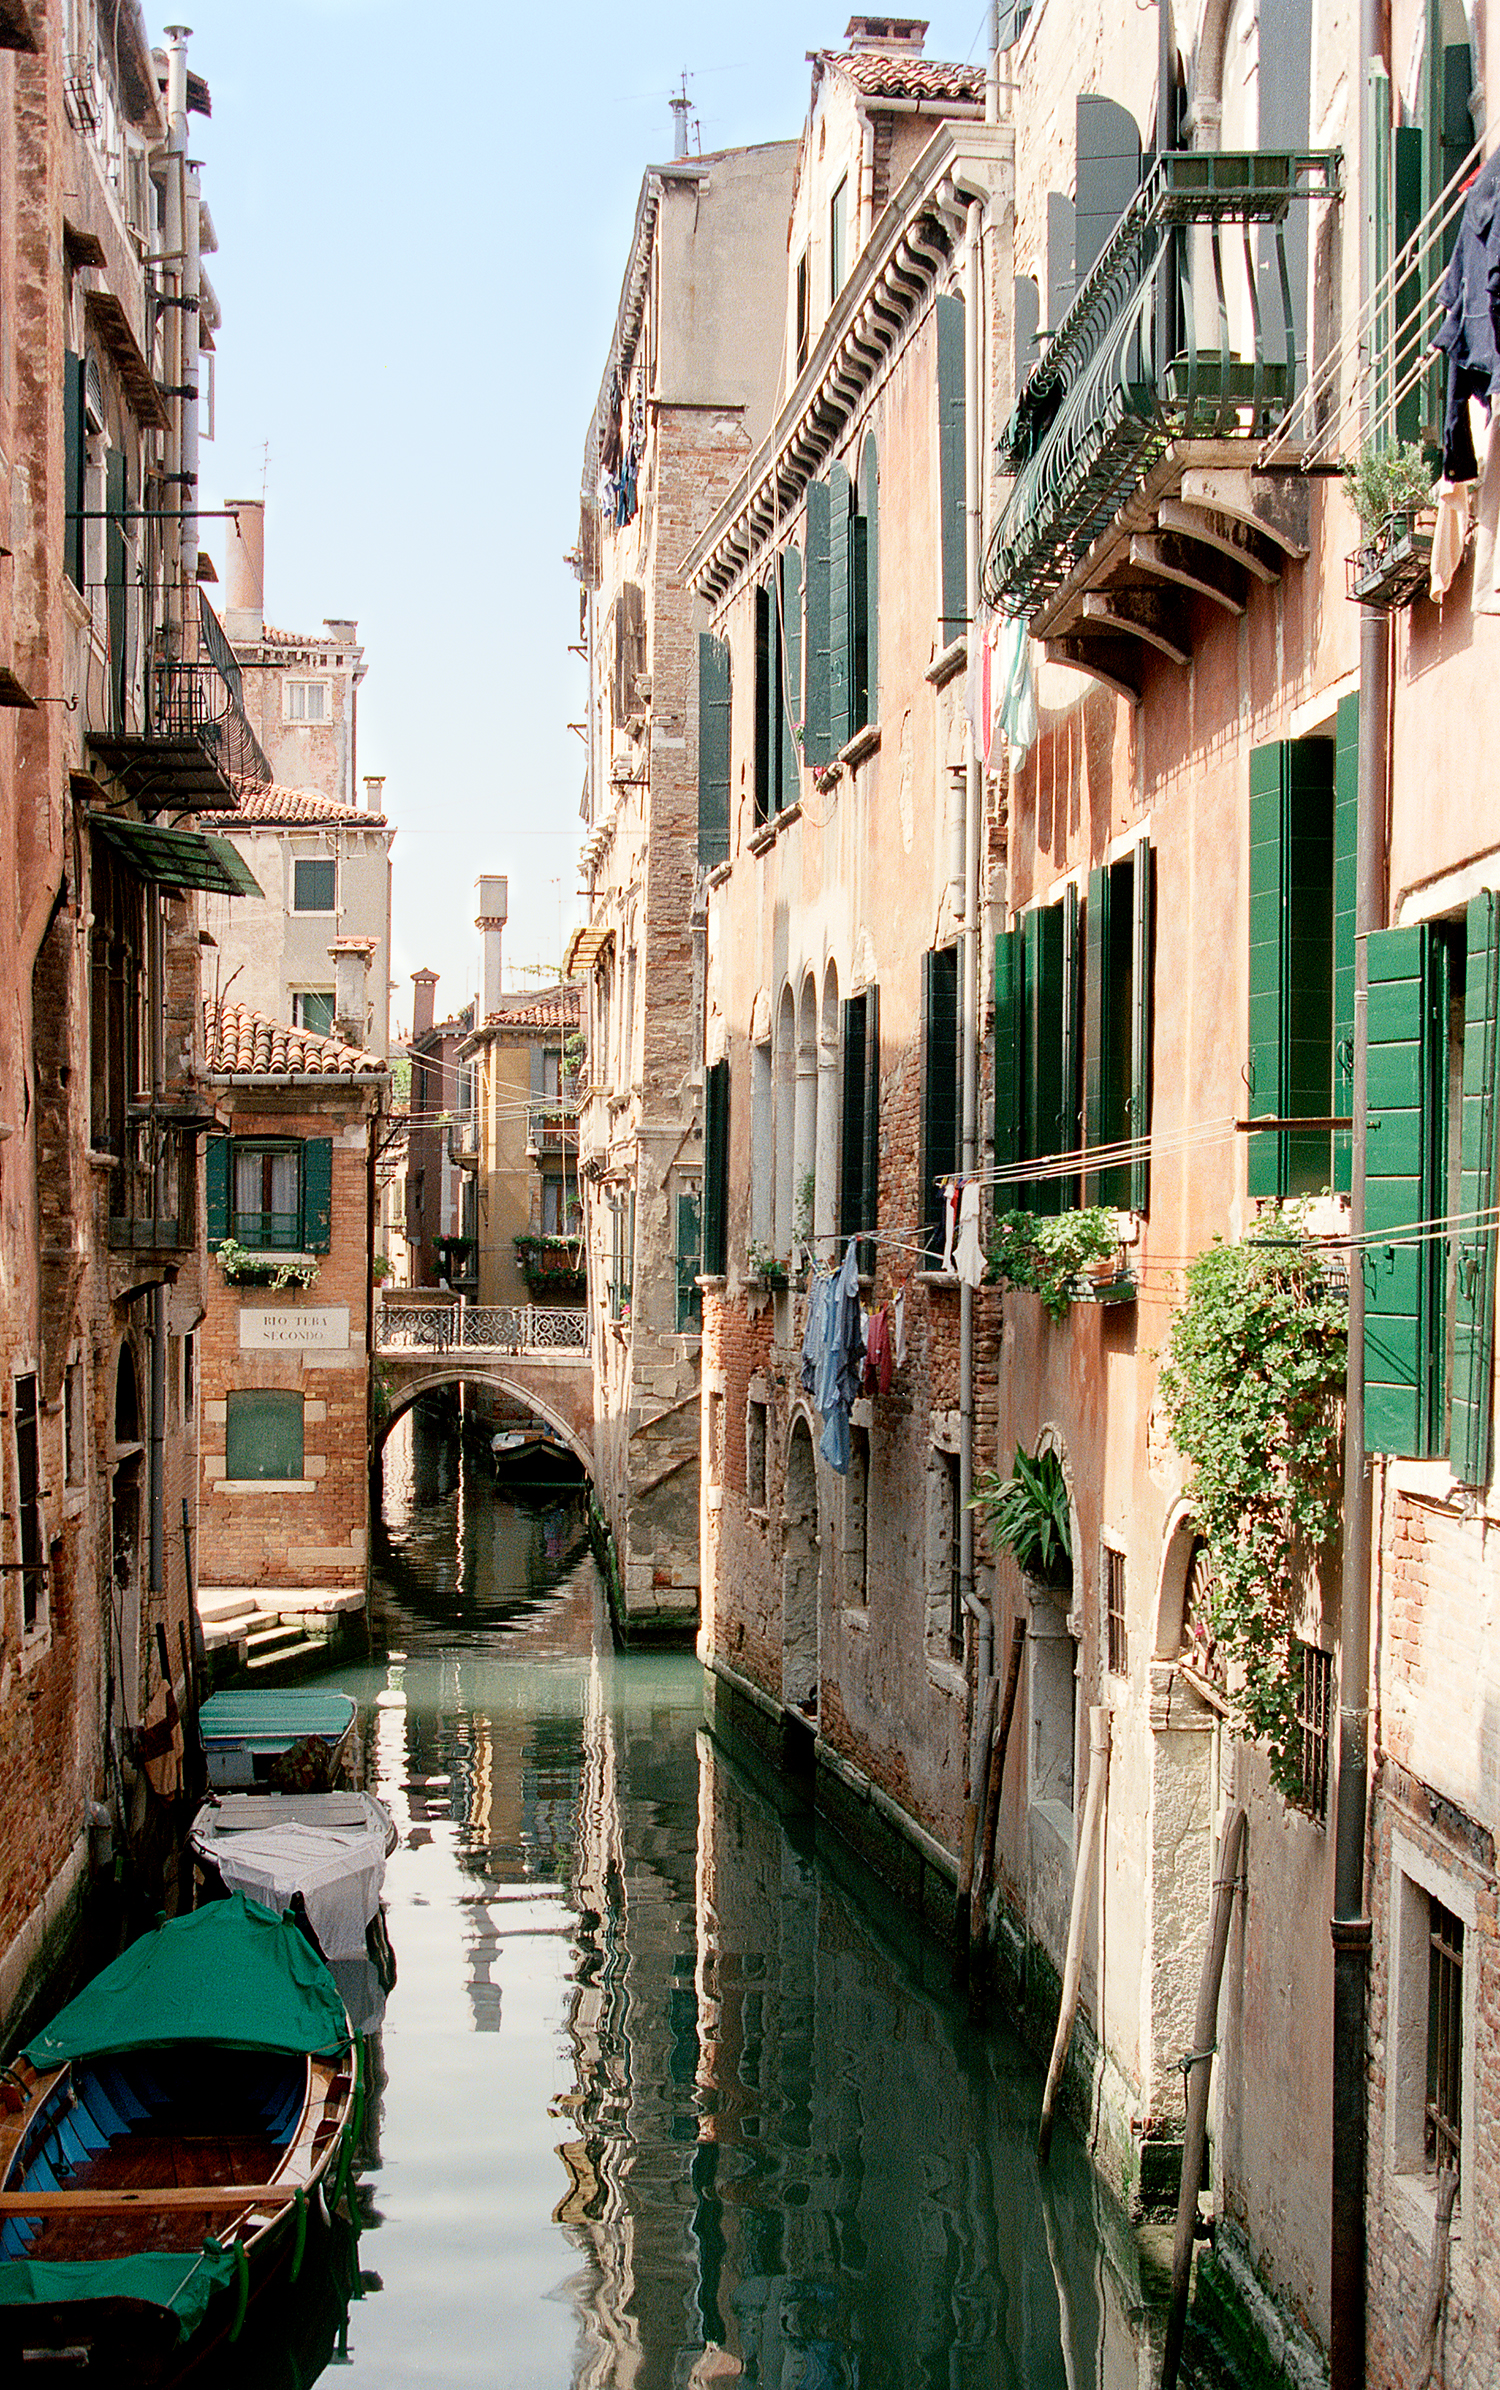   Venice, of course  